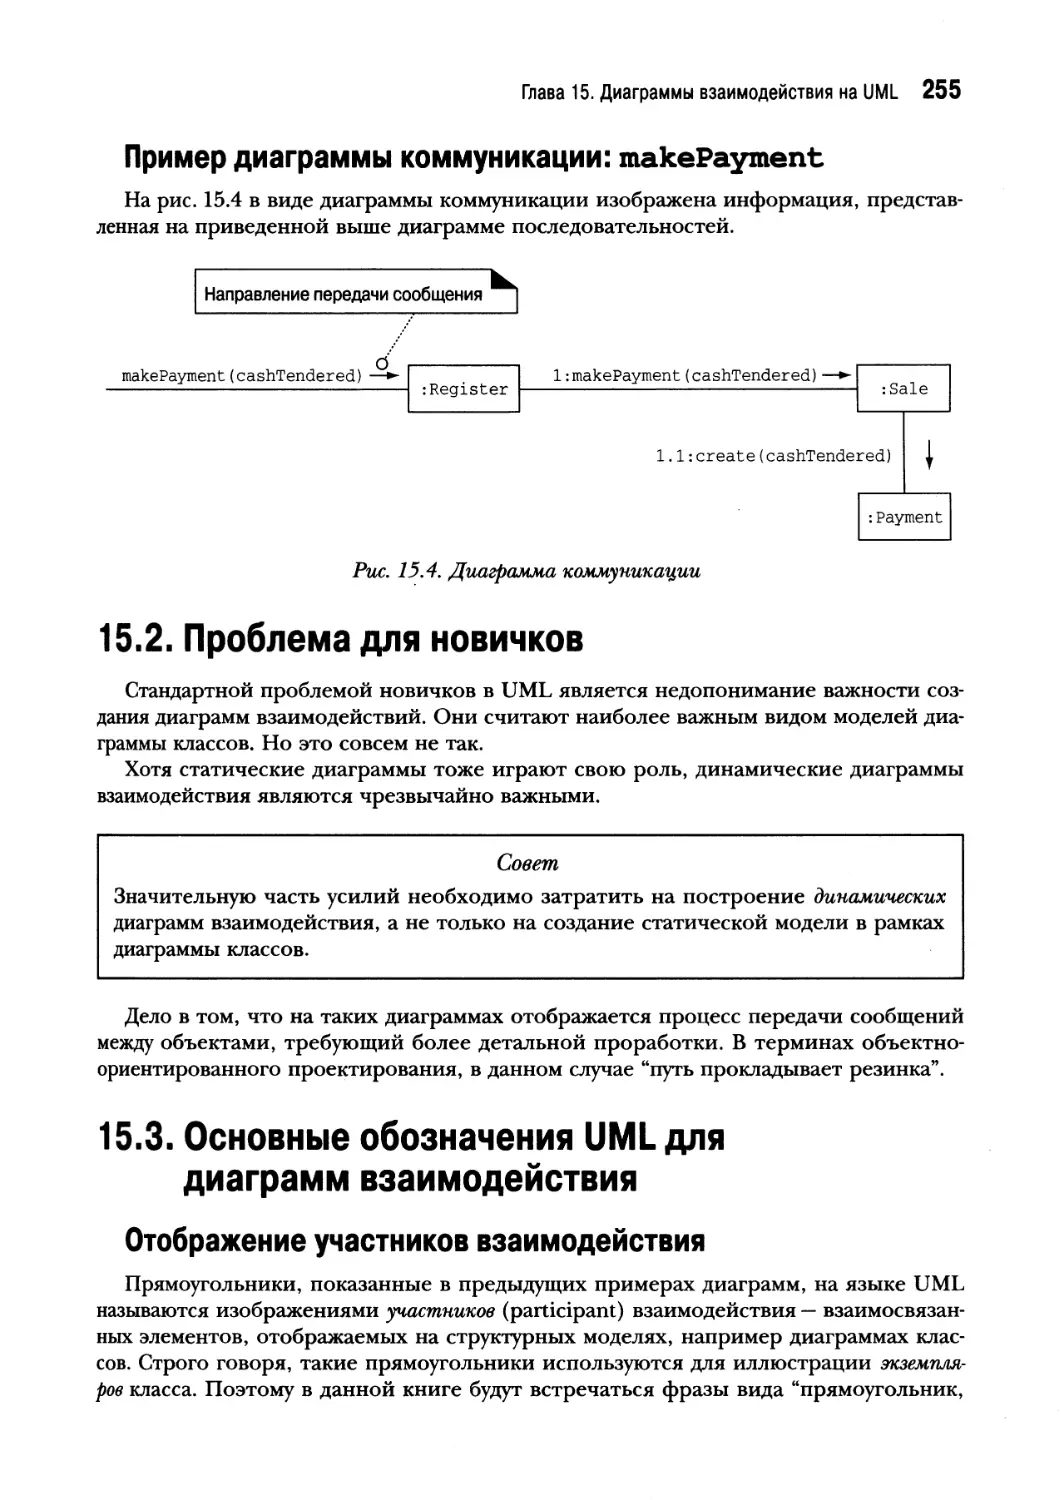 15.2. Проблема для новичков
15.3. Основные обозначения UML для диаграмм взаимодействия